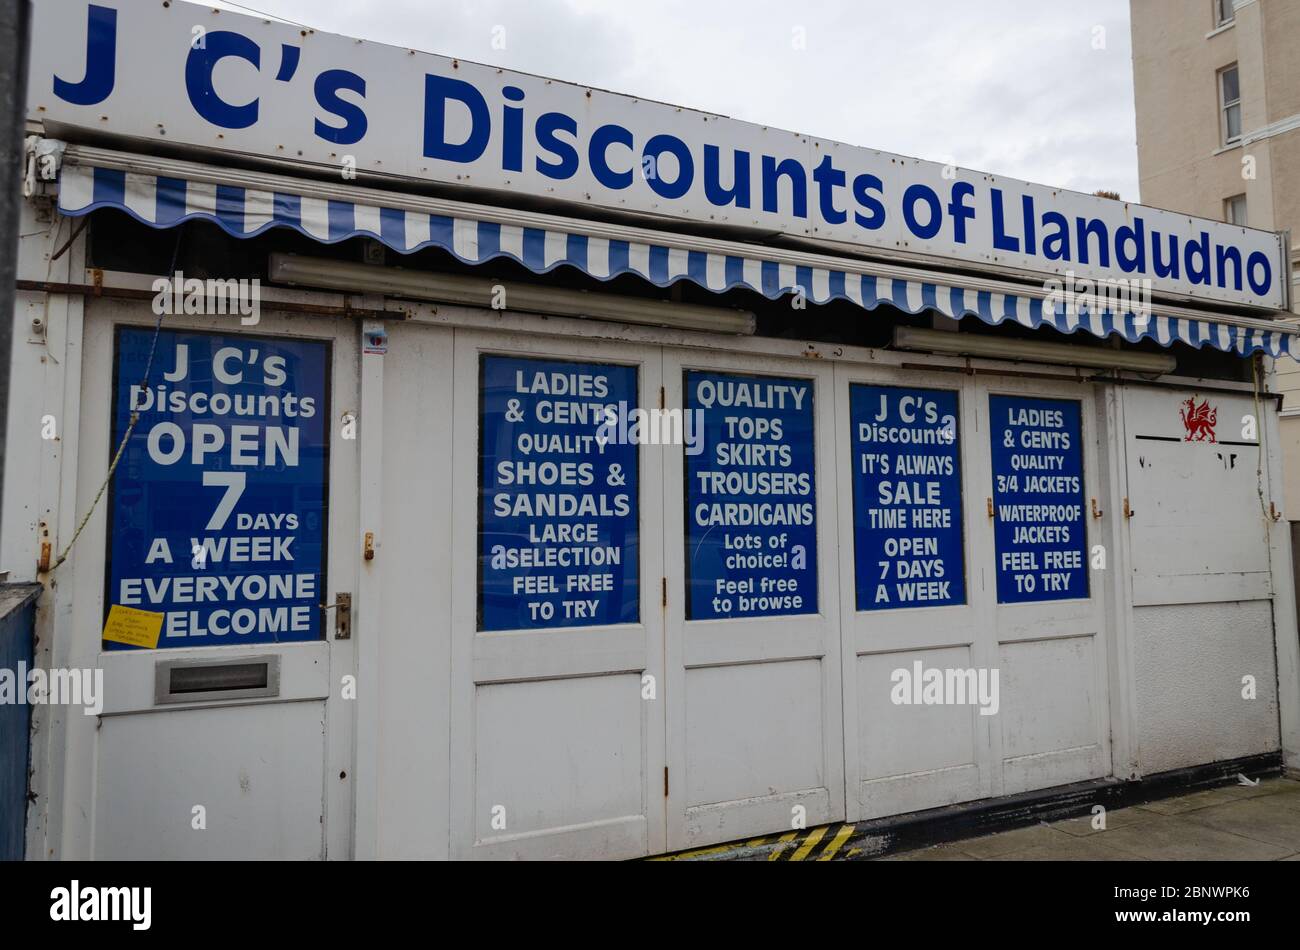 Llandudno, Royaume-Uni: 27 août 2019: J C's Promotions de Clonmel Street sont des détaillants de vêtements qui ouvrent 7 jours par semaine. Vu ici en dehors des heures d'ouverture. Banque D'Images